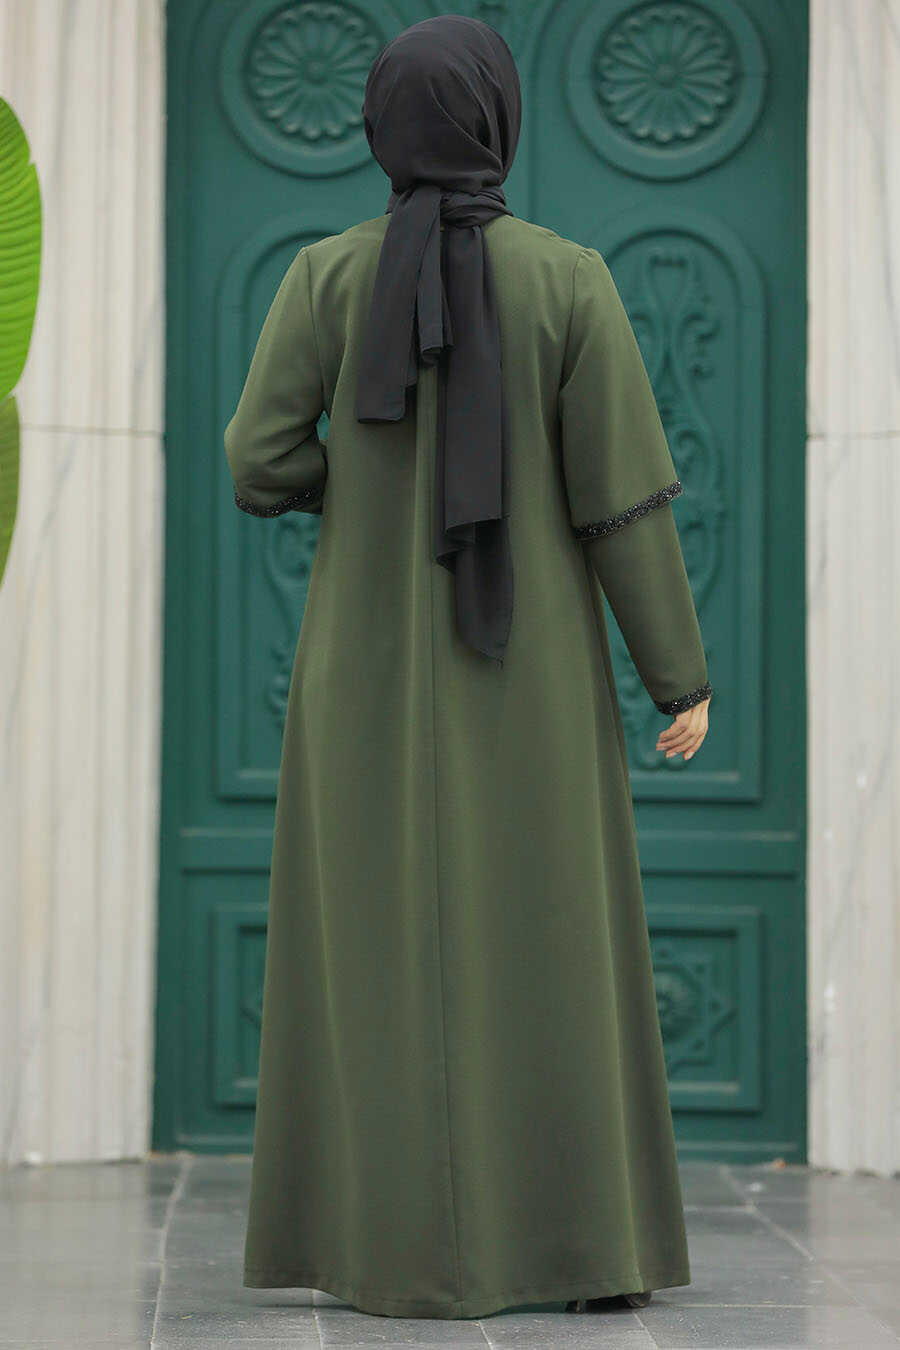 Neva Style - Khaki Plus Size Turkish Abaya 10091HK